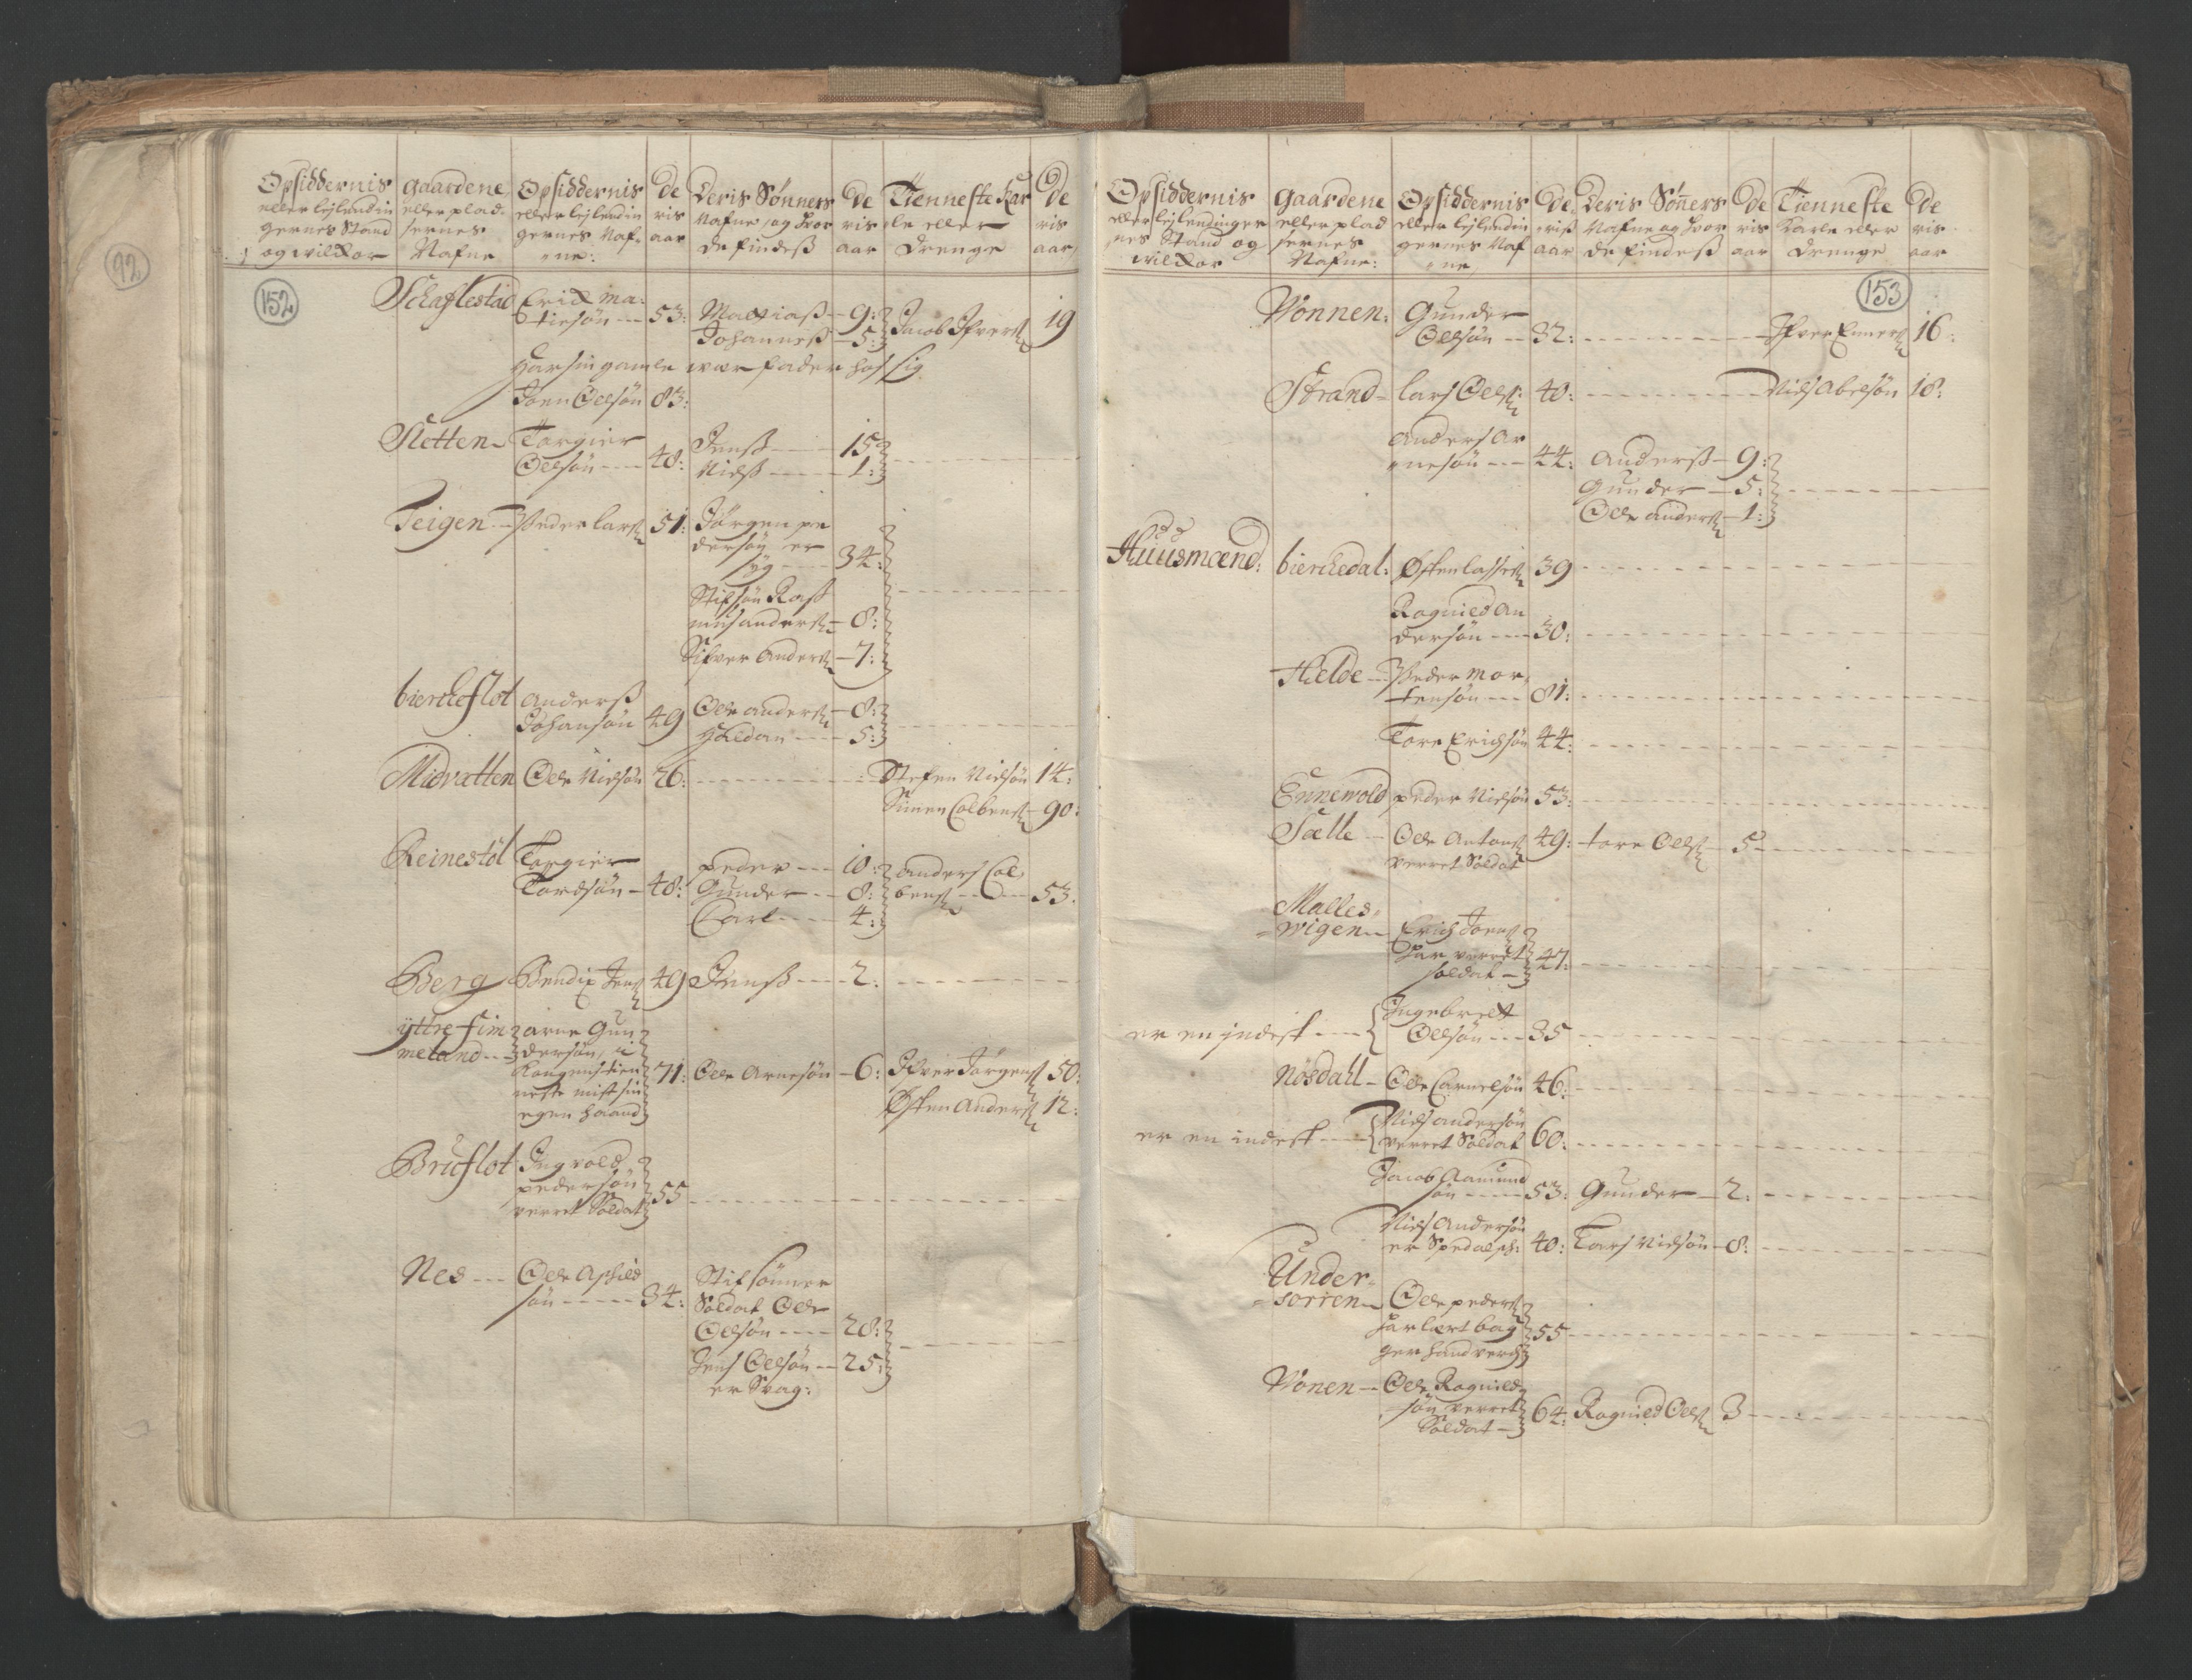 RA, Census (manntall) 1701, no. 9: Sunnfjord fogderi, Nordfjord fogderi and Svanø birk, 1701, p. 152-153